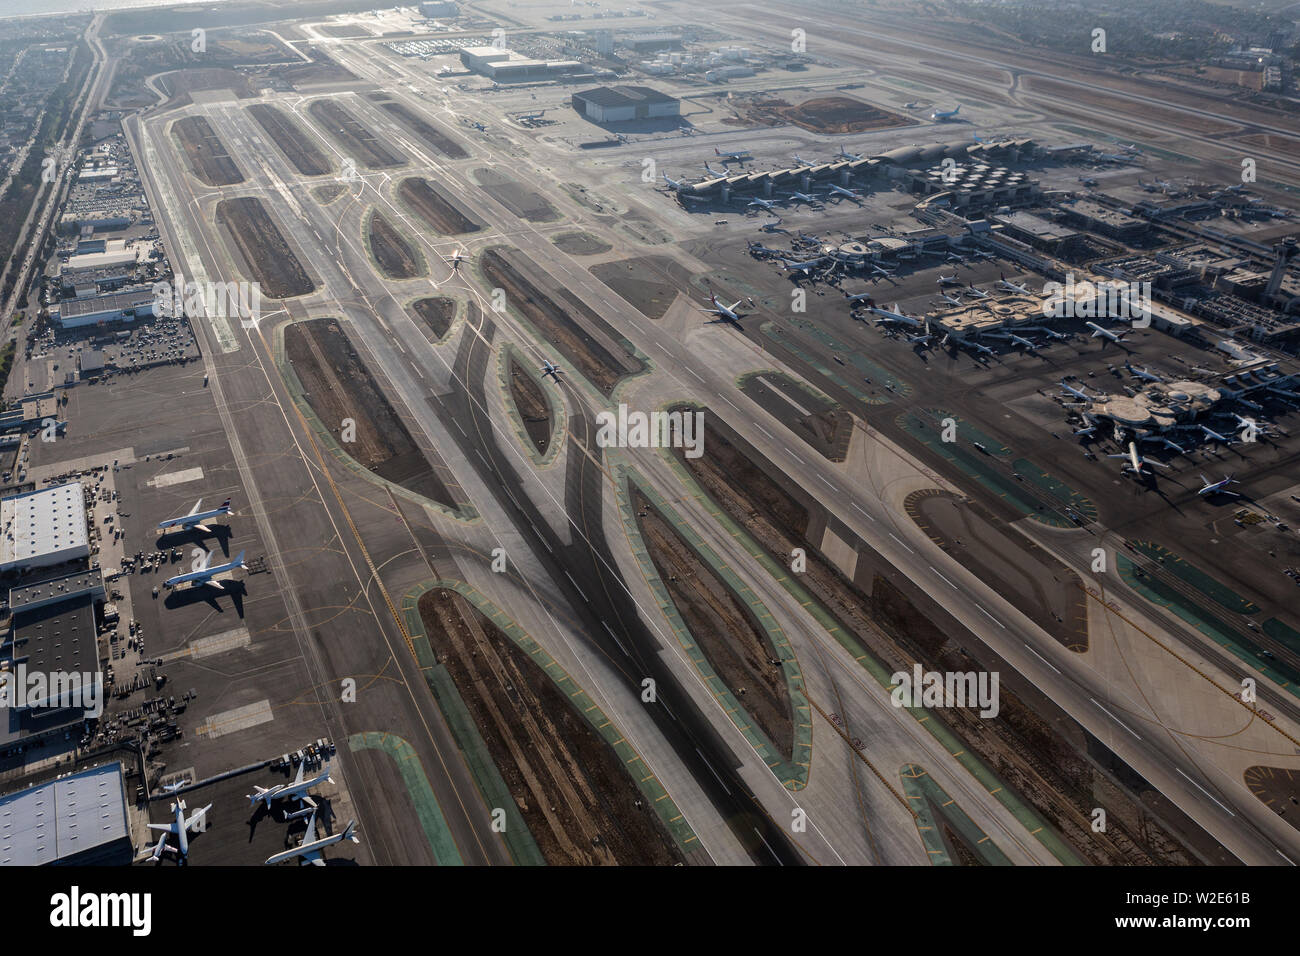 Los Angeles, California, Stati Uniti d'America - Agosto 16, 2016: vista aerea della pista e i terminali presso l'aeroporto di Los Angeles in California del Sud. Foto Stock